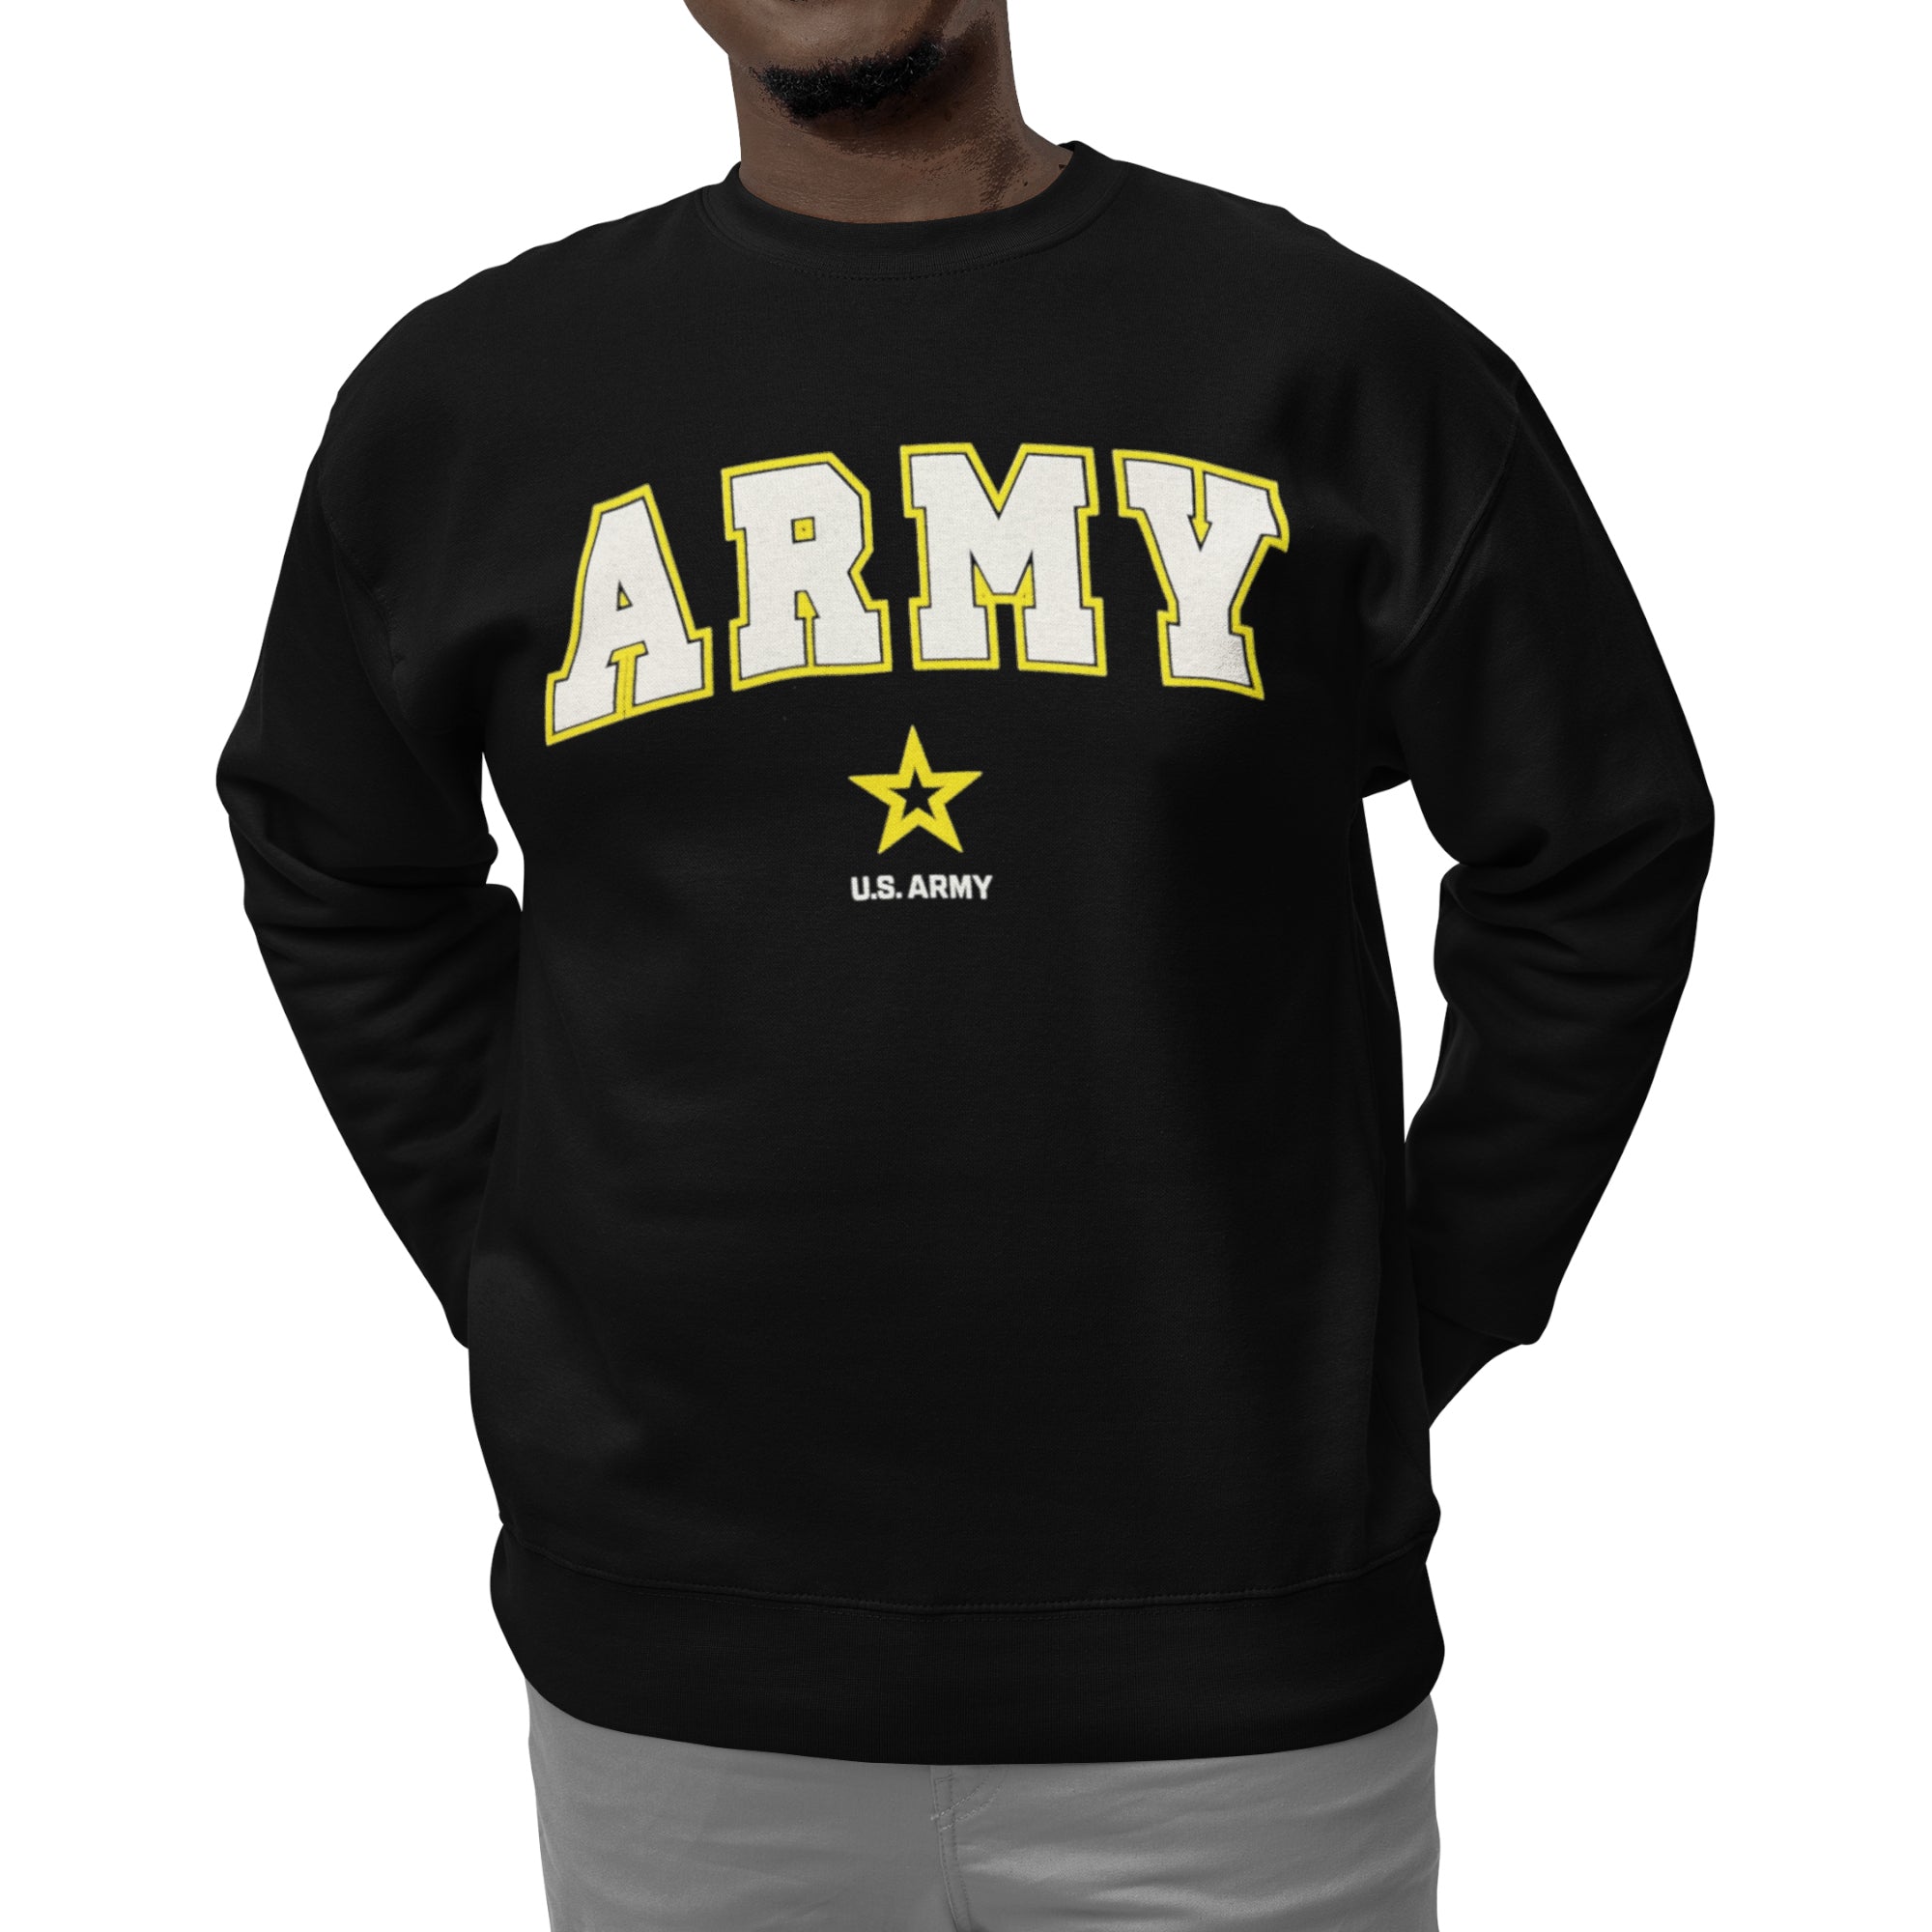 Army Arch Star Crewneck (Black)